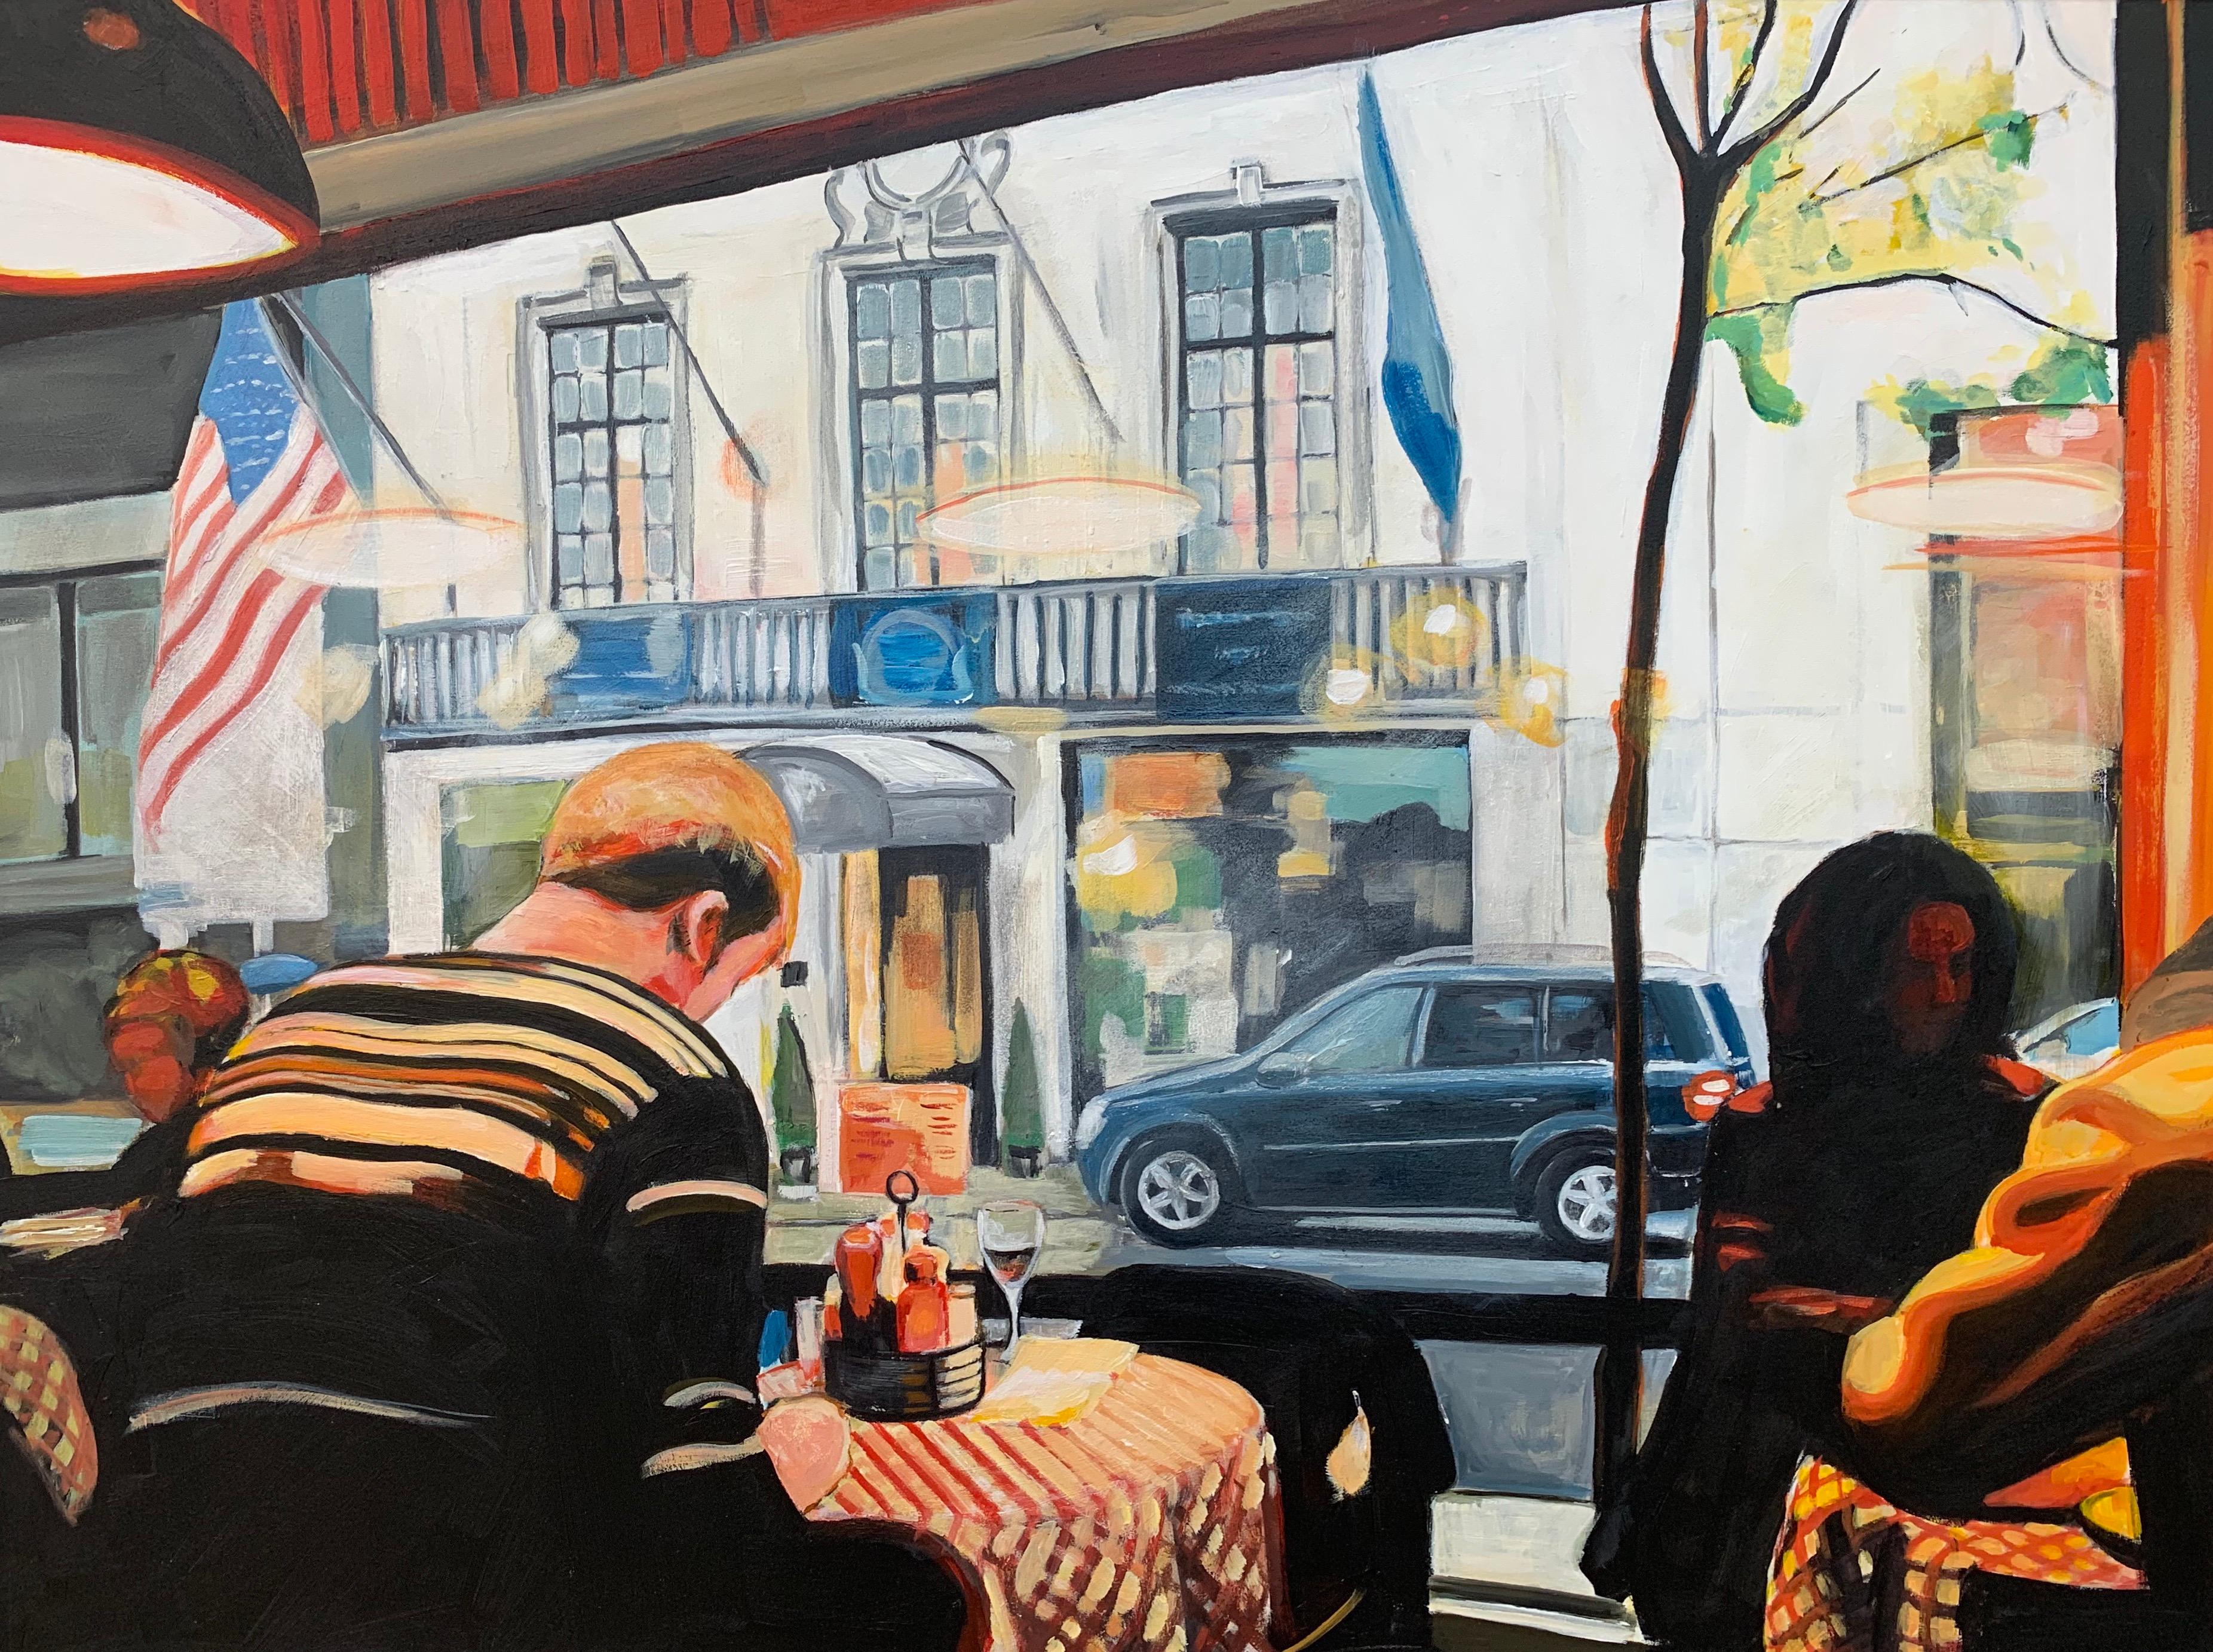 Stillleben eines amerikanischen Diners in New York City, gemalt von der führenden britischen Künstlerin für urbane Landschaften, Angela Wakefield. Gemälde von amerikanischen Diners, Food Courts, Truck Stops, Tankstellen, Stillleben und allen